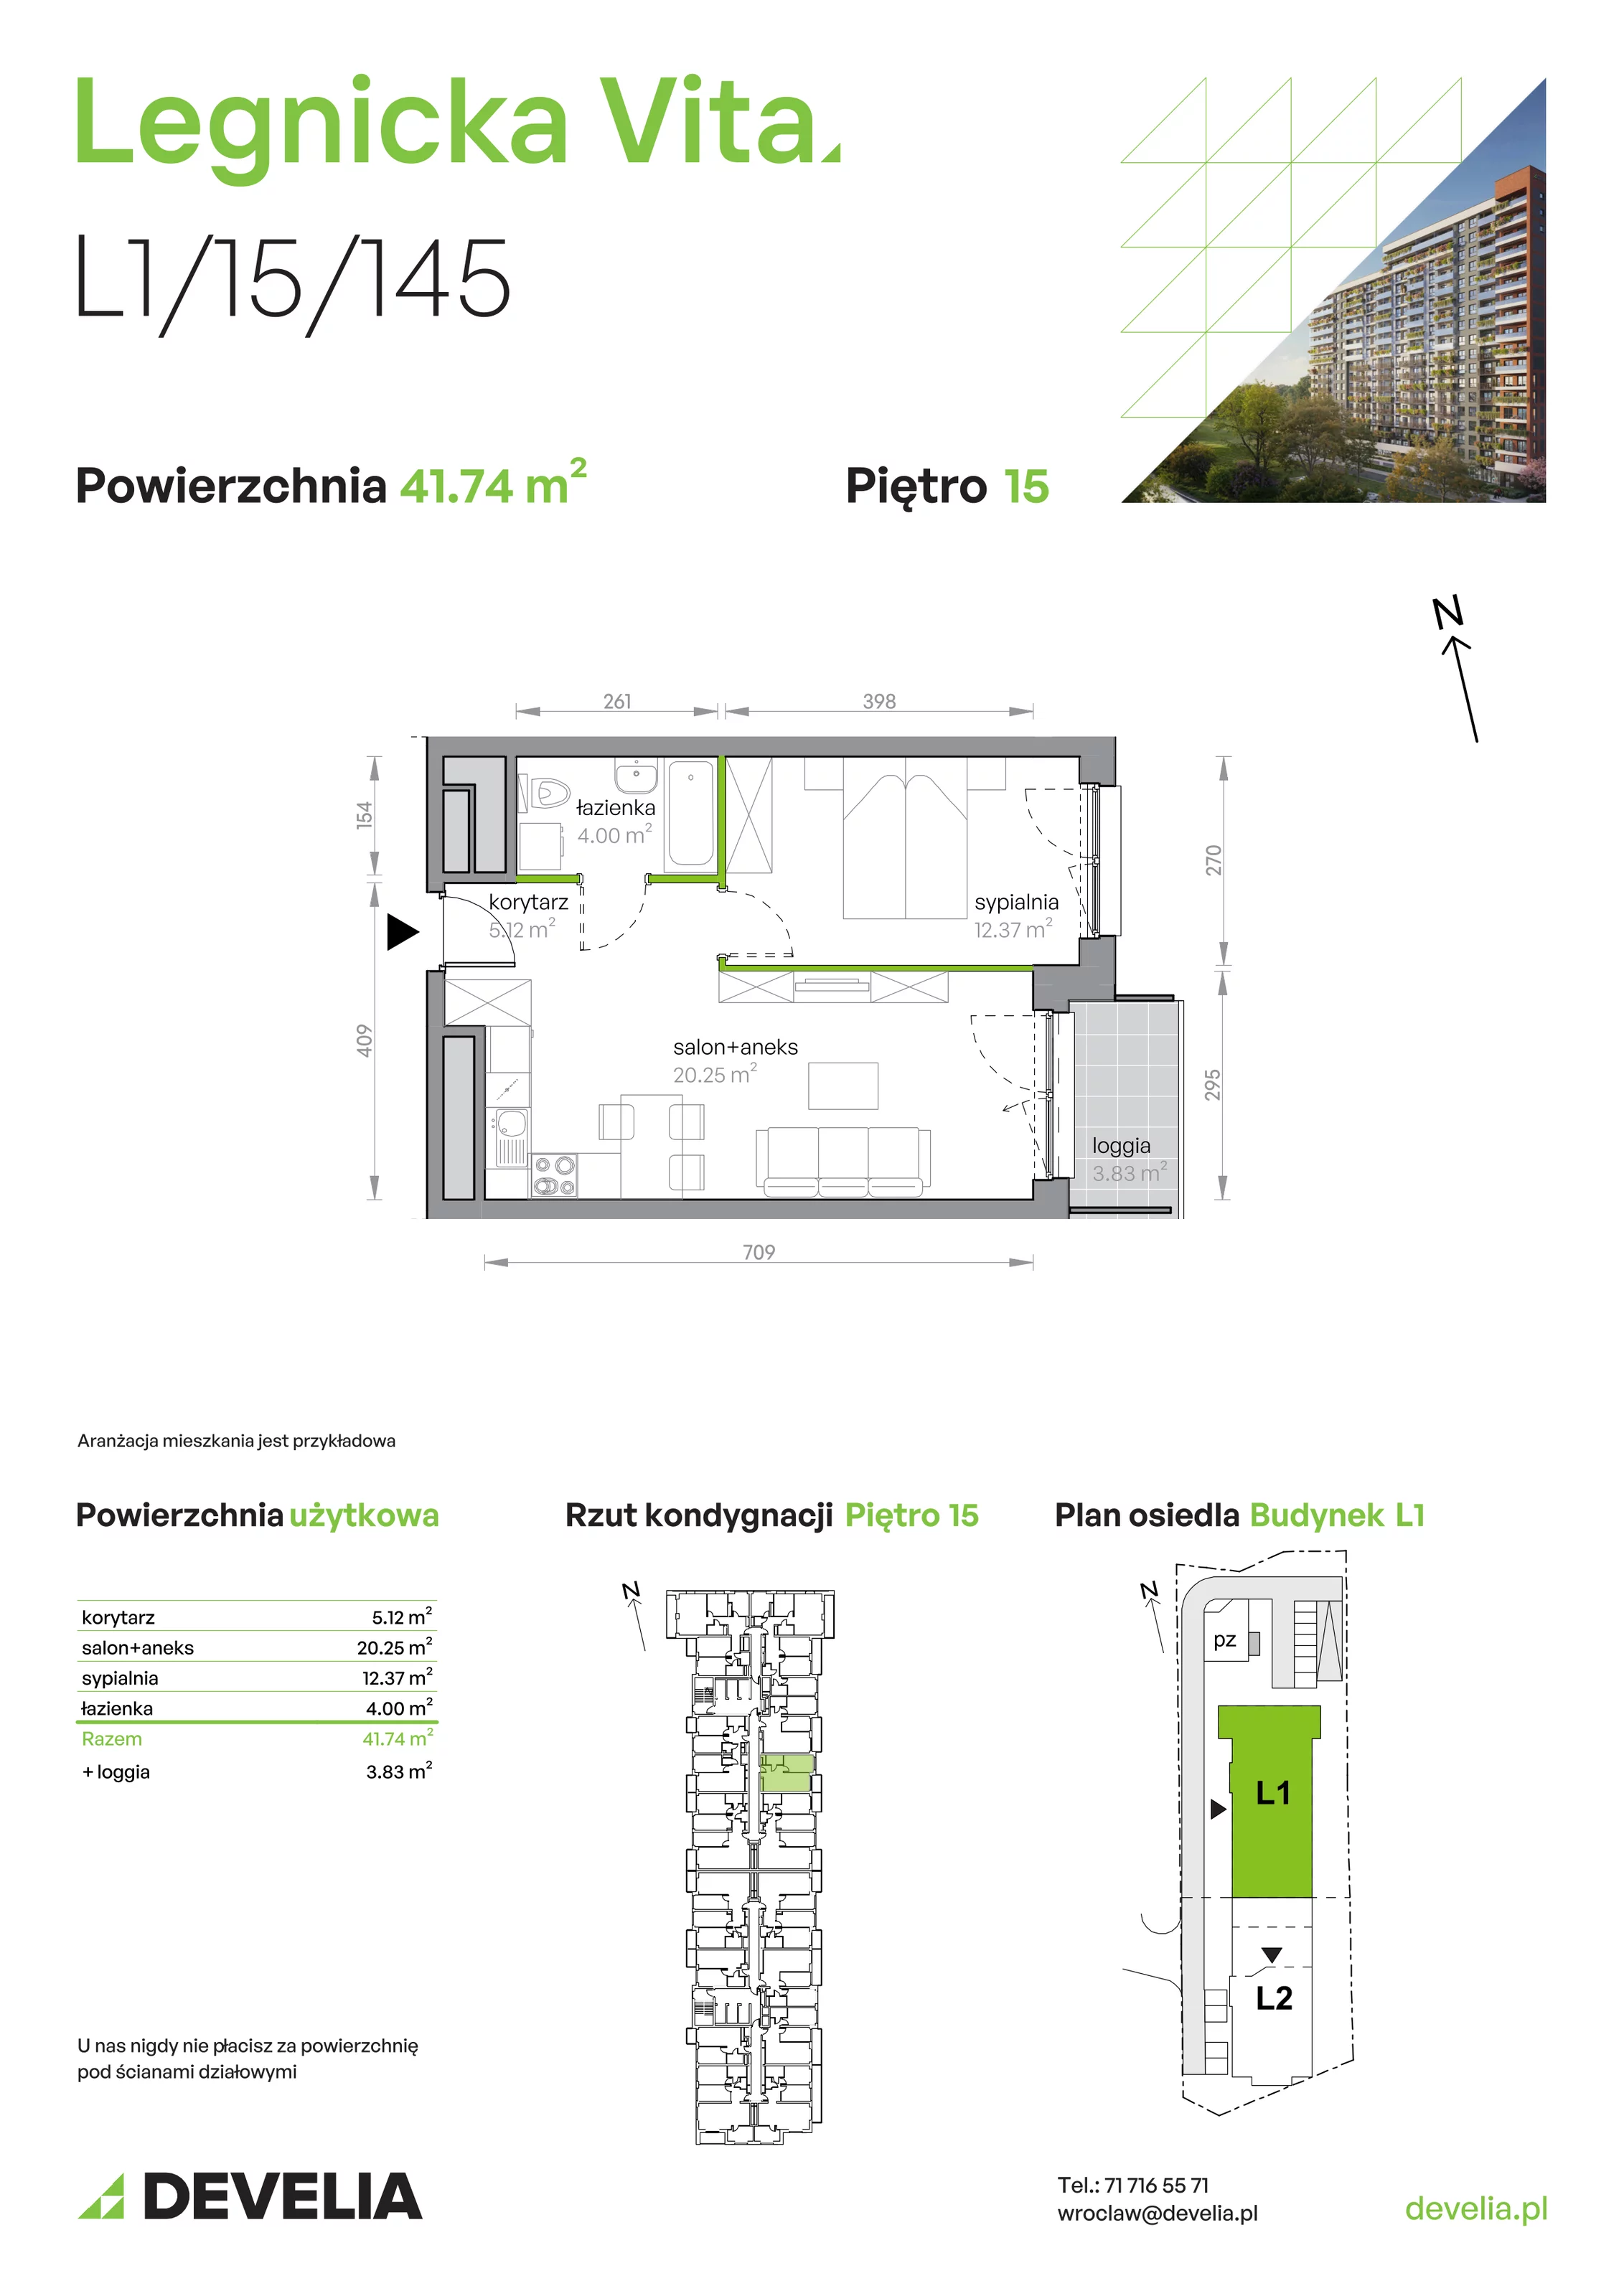 Mieszkanie 41,74 m², piętro 15, oferta nr L1/15/145, Legnicka Vita, Wrocław, Gądów-Popowice Południowe, Popowice, ul. Legnicka 52 A